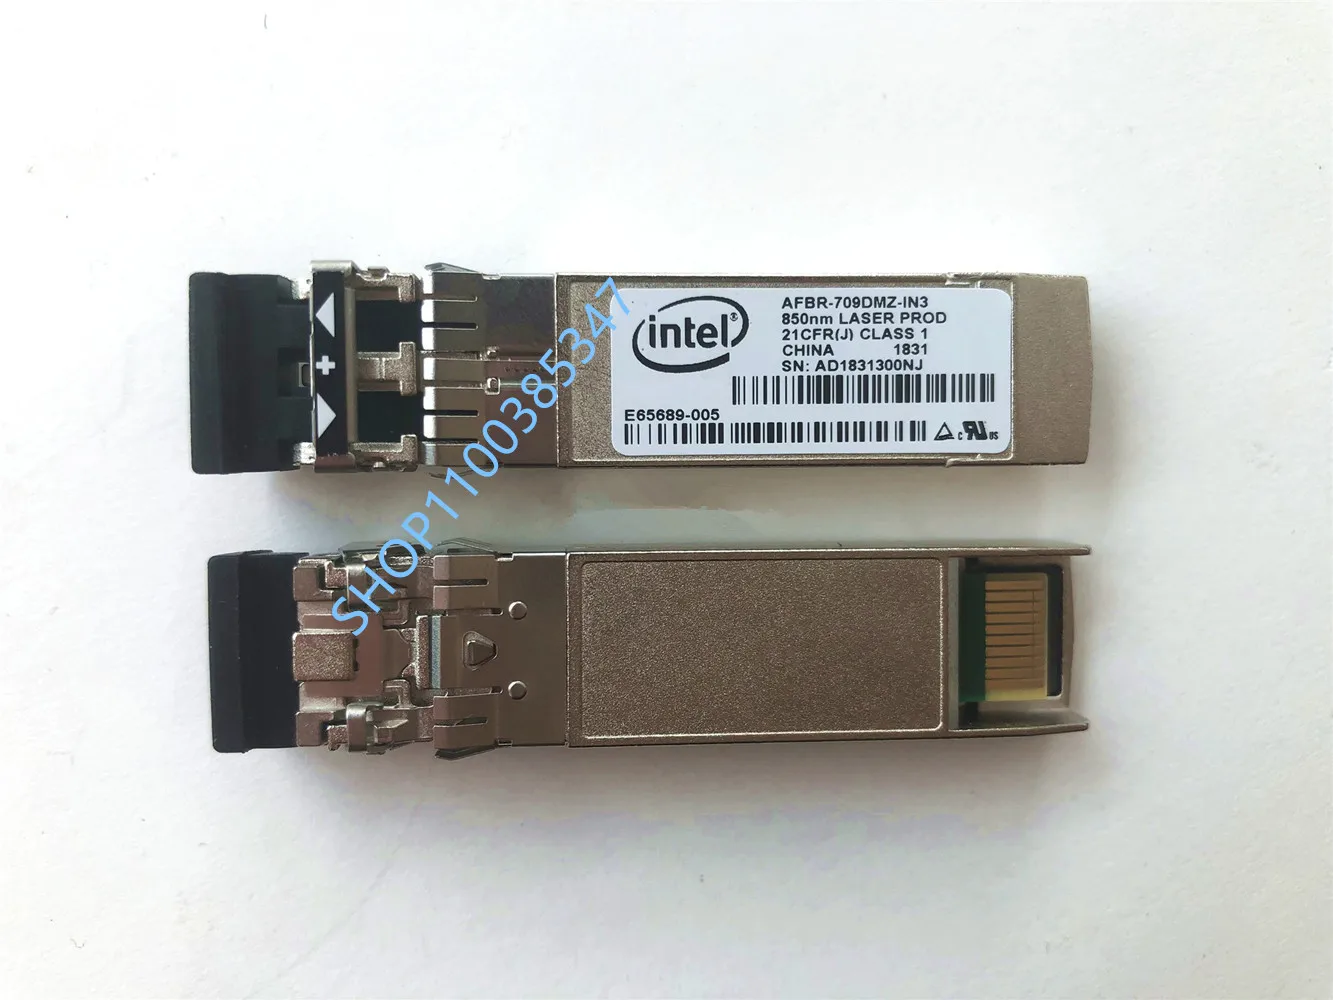 Intel sfp 10g/AFBR-709DMZ-IN3/E65689-005/E10GSFPSR/850NM X520 X710 network card Module/10gb Fiber optic/fiber port switches